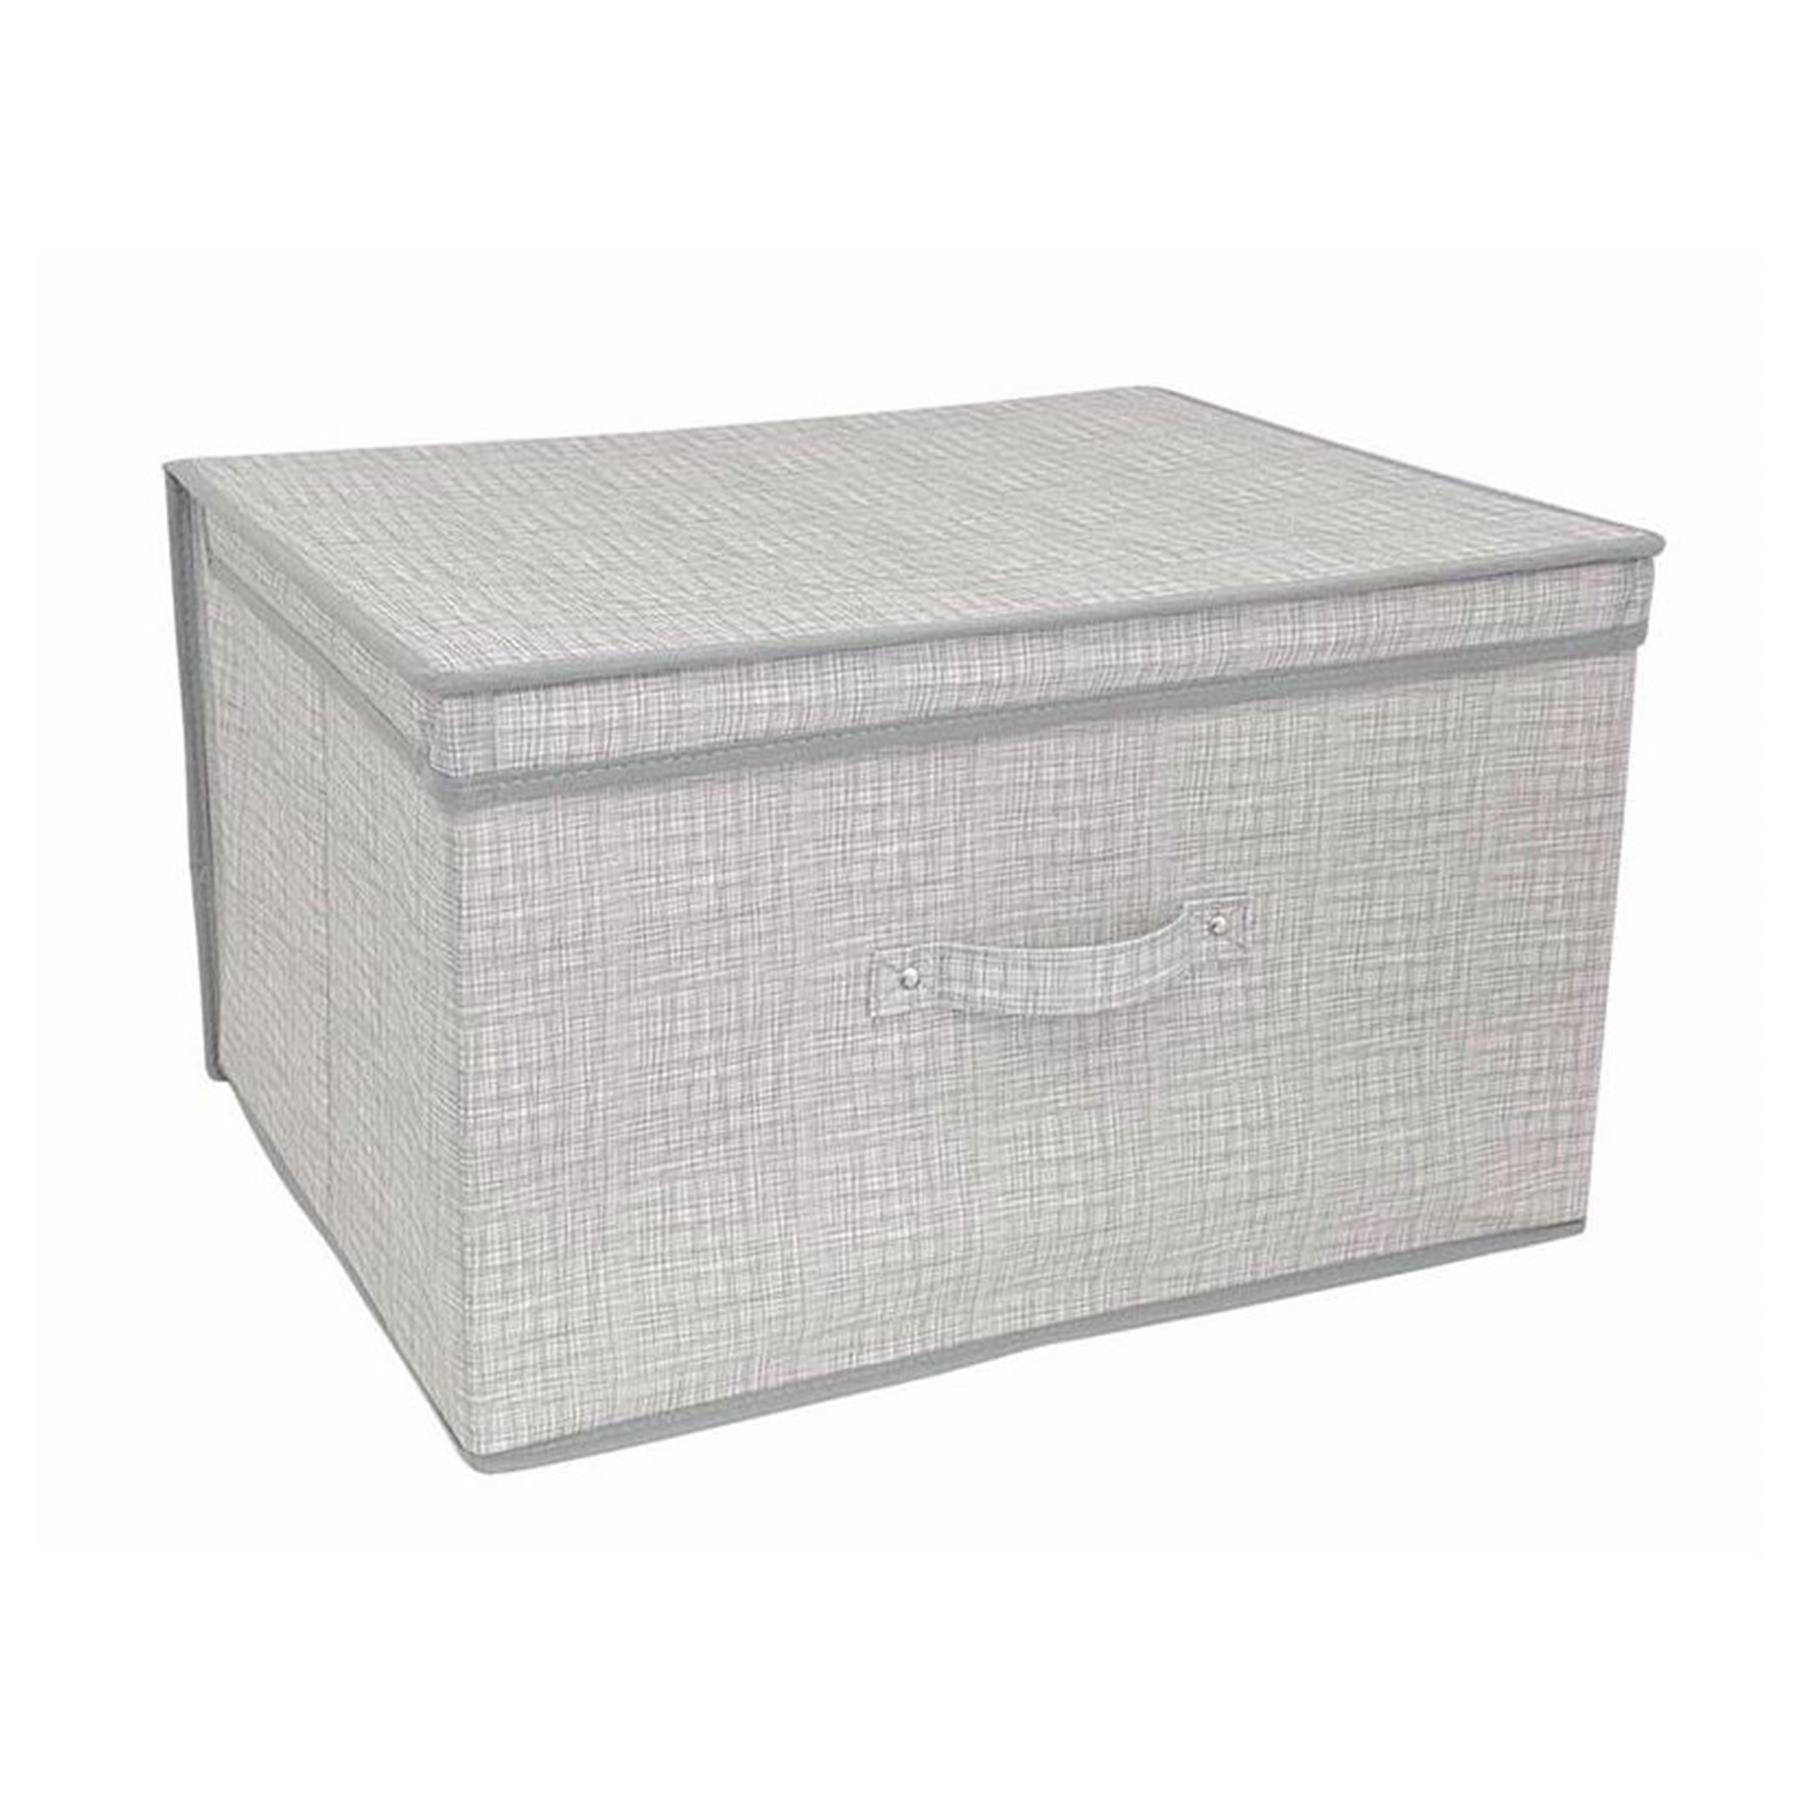 Linen Grey Large Storage Box by The Magic Toy Shop - UKBuyZone – UKbuyzone